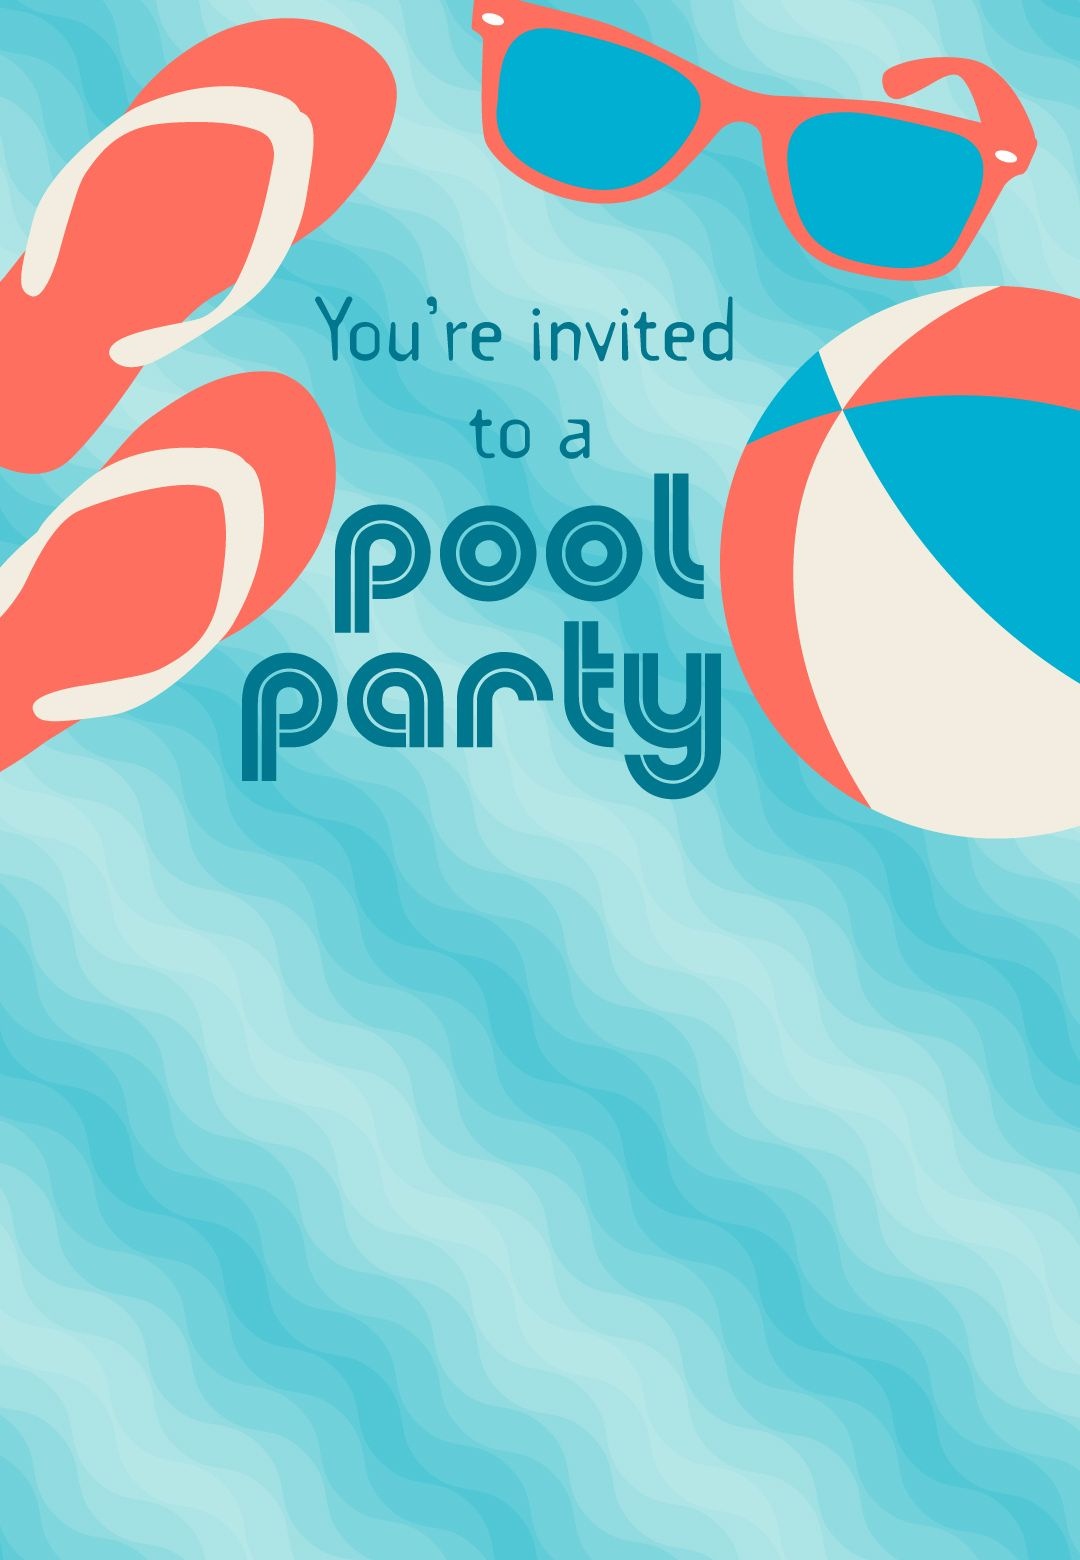 Free Printable Pool Party Stuff Invitation | Projects To Try In 2019 - Free Printable Pool Party Birthday Invitations